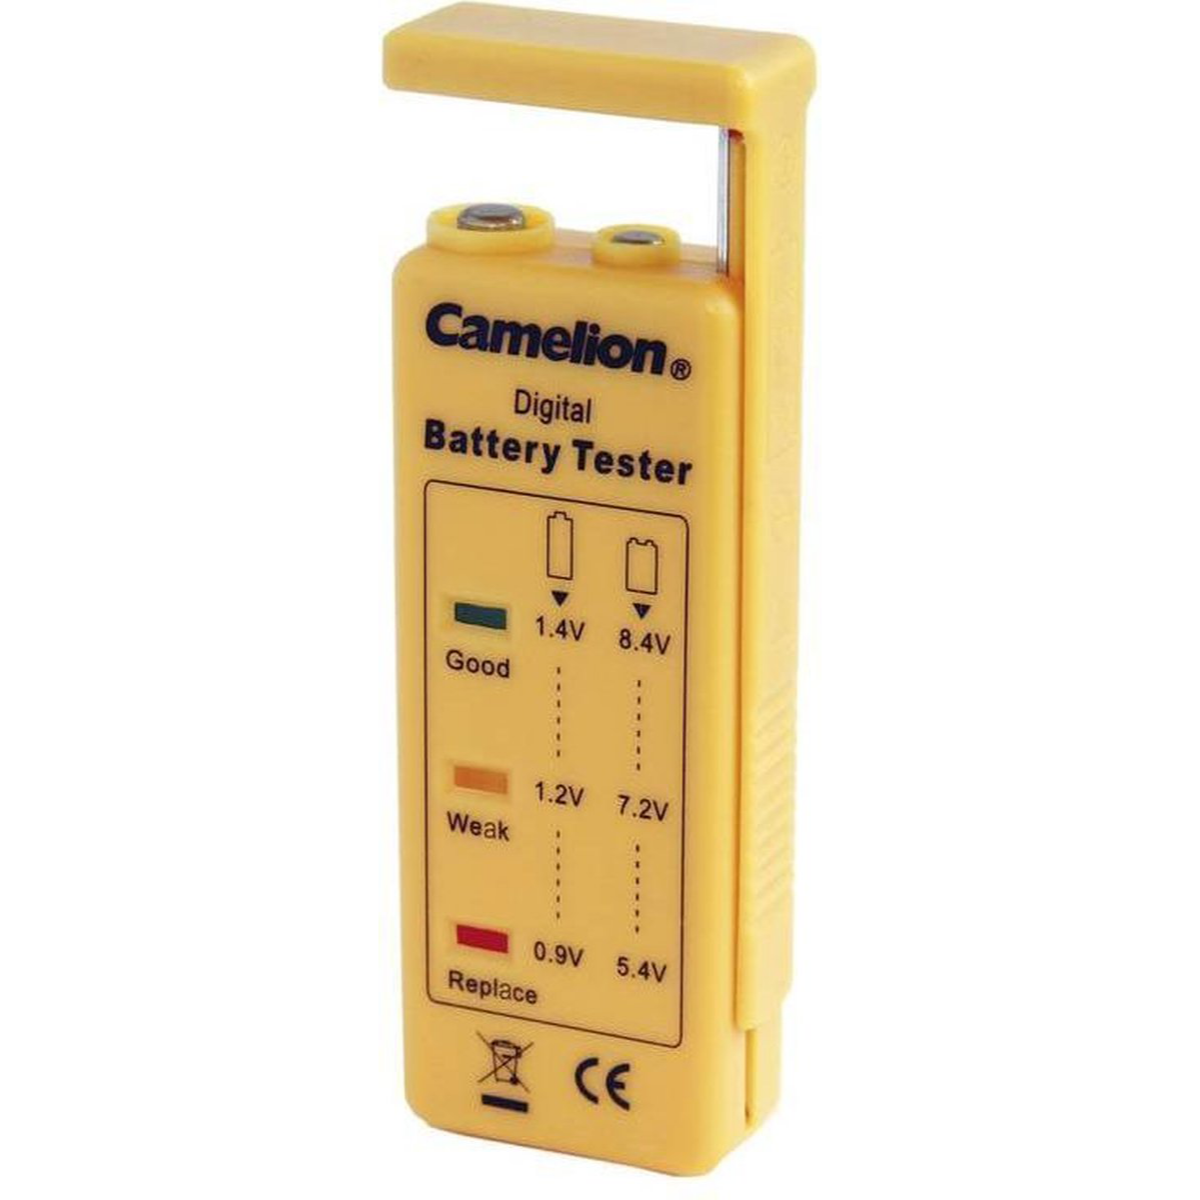 Camelion Batterie Tester BT 0503 - Camelion